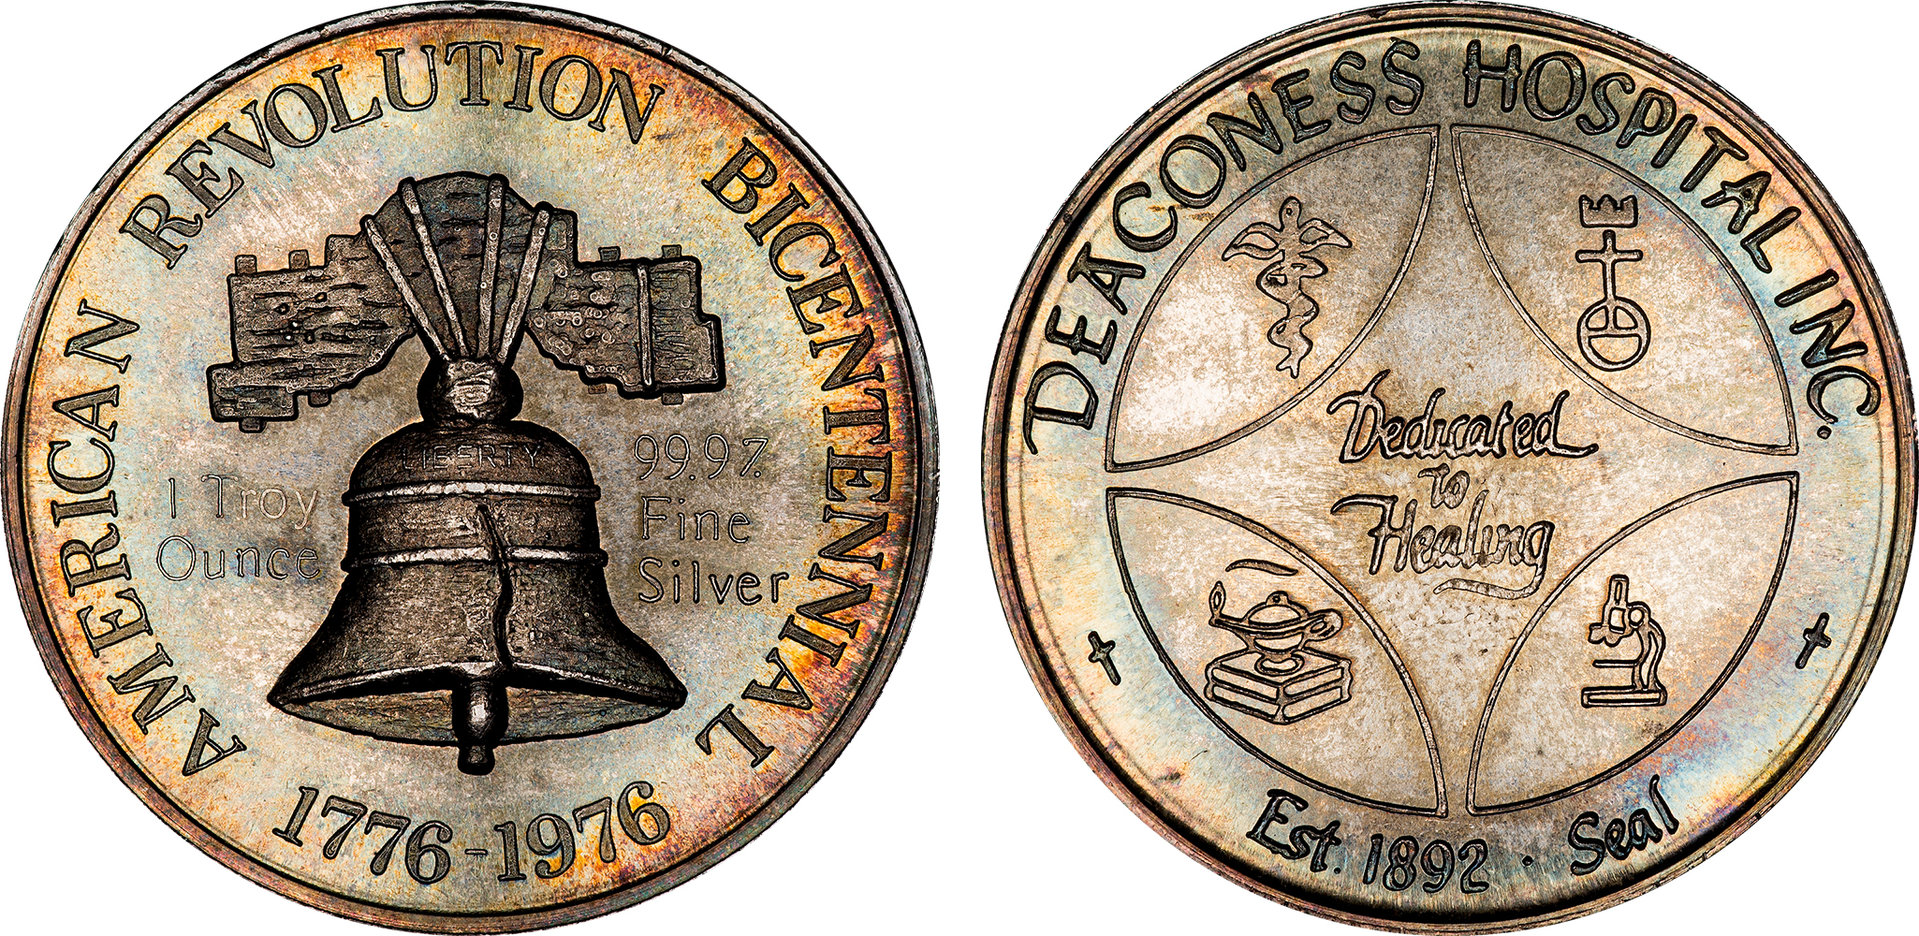 1976 American Revolution Bicentennial Deaconess Hospital Silver Medal.jpg